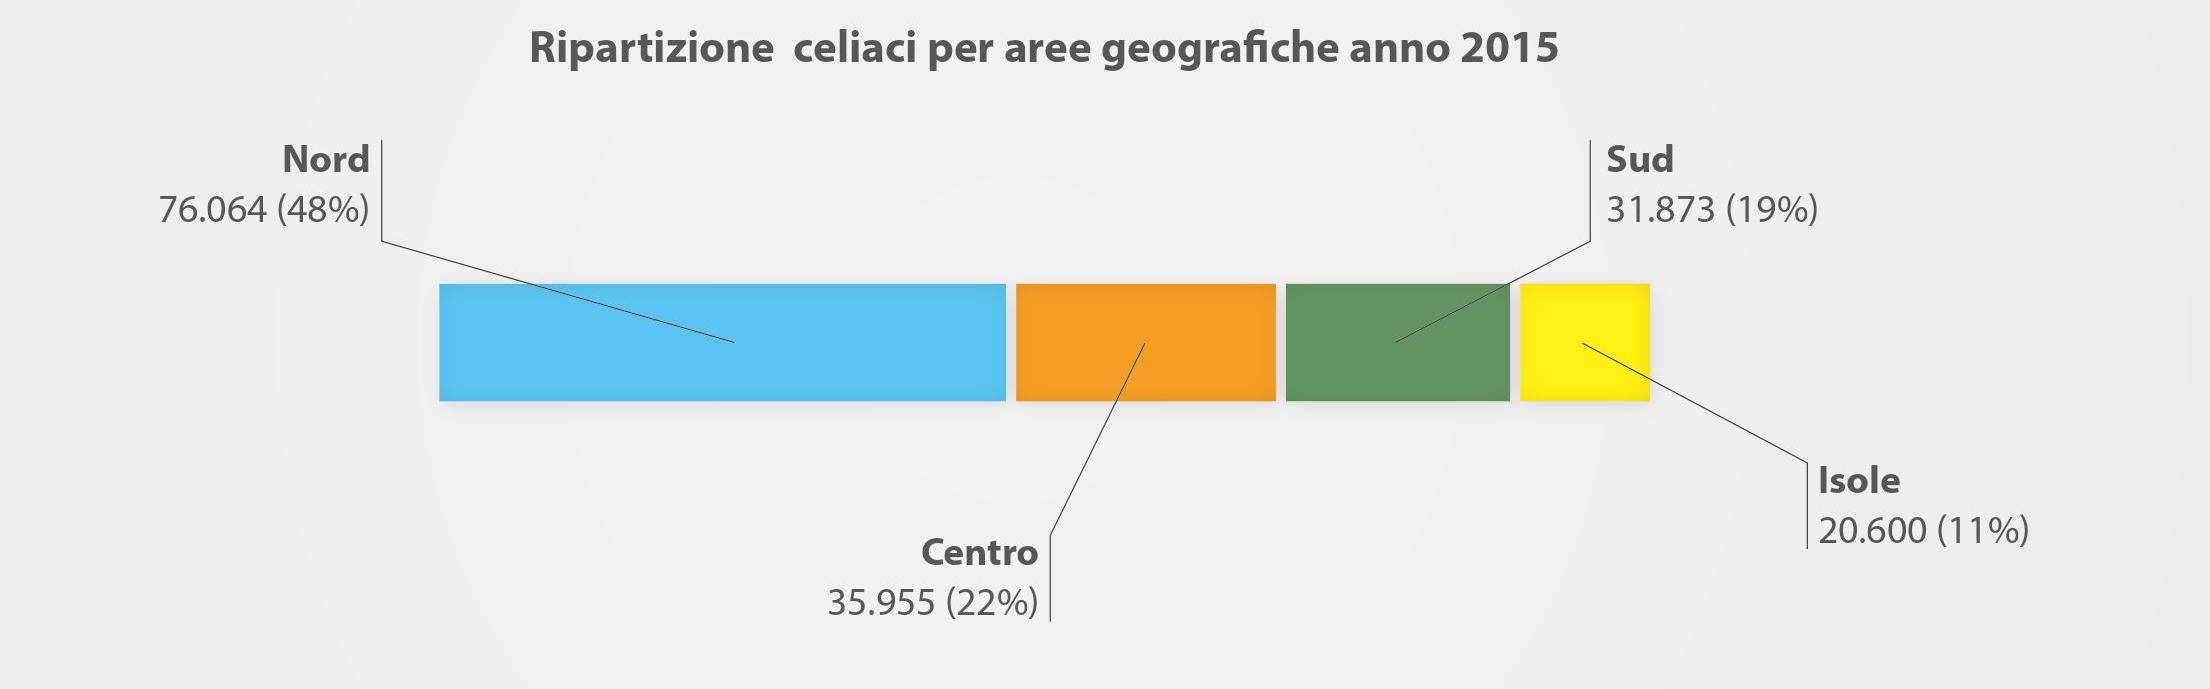 Distribuzione dei celiaci in Italia